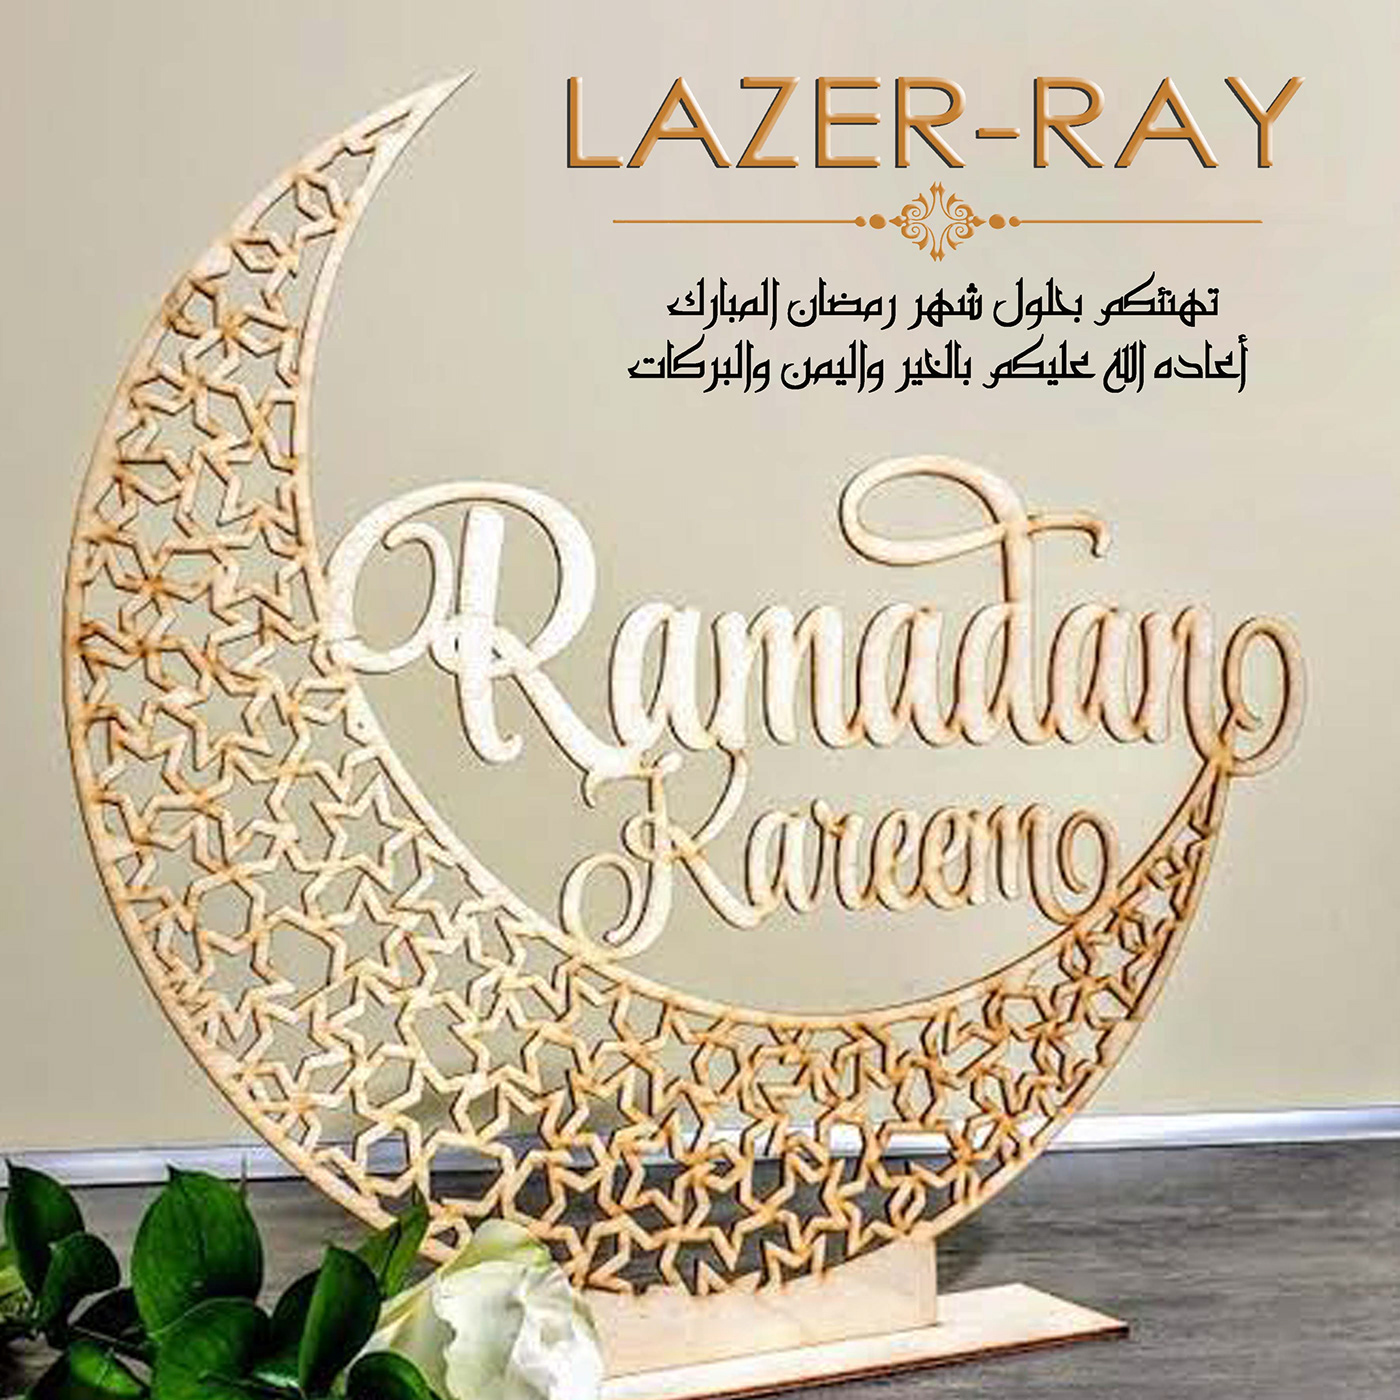 laser ray luxury ray company